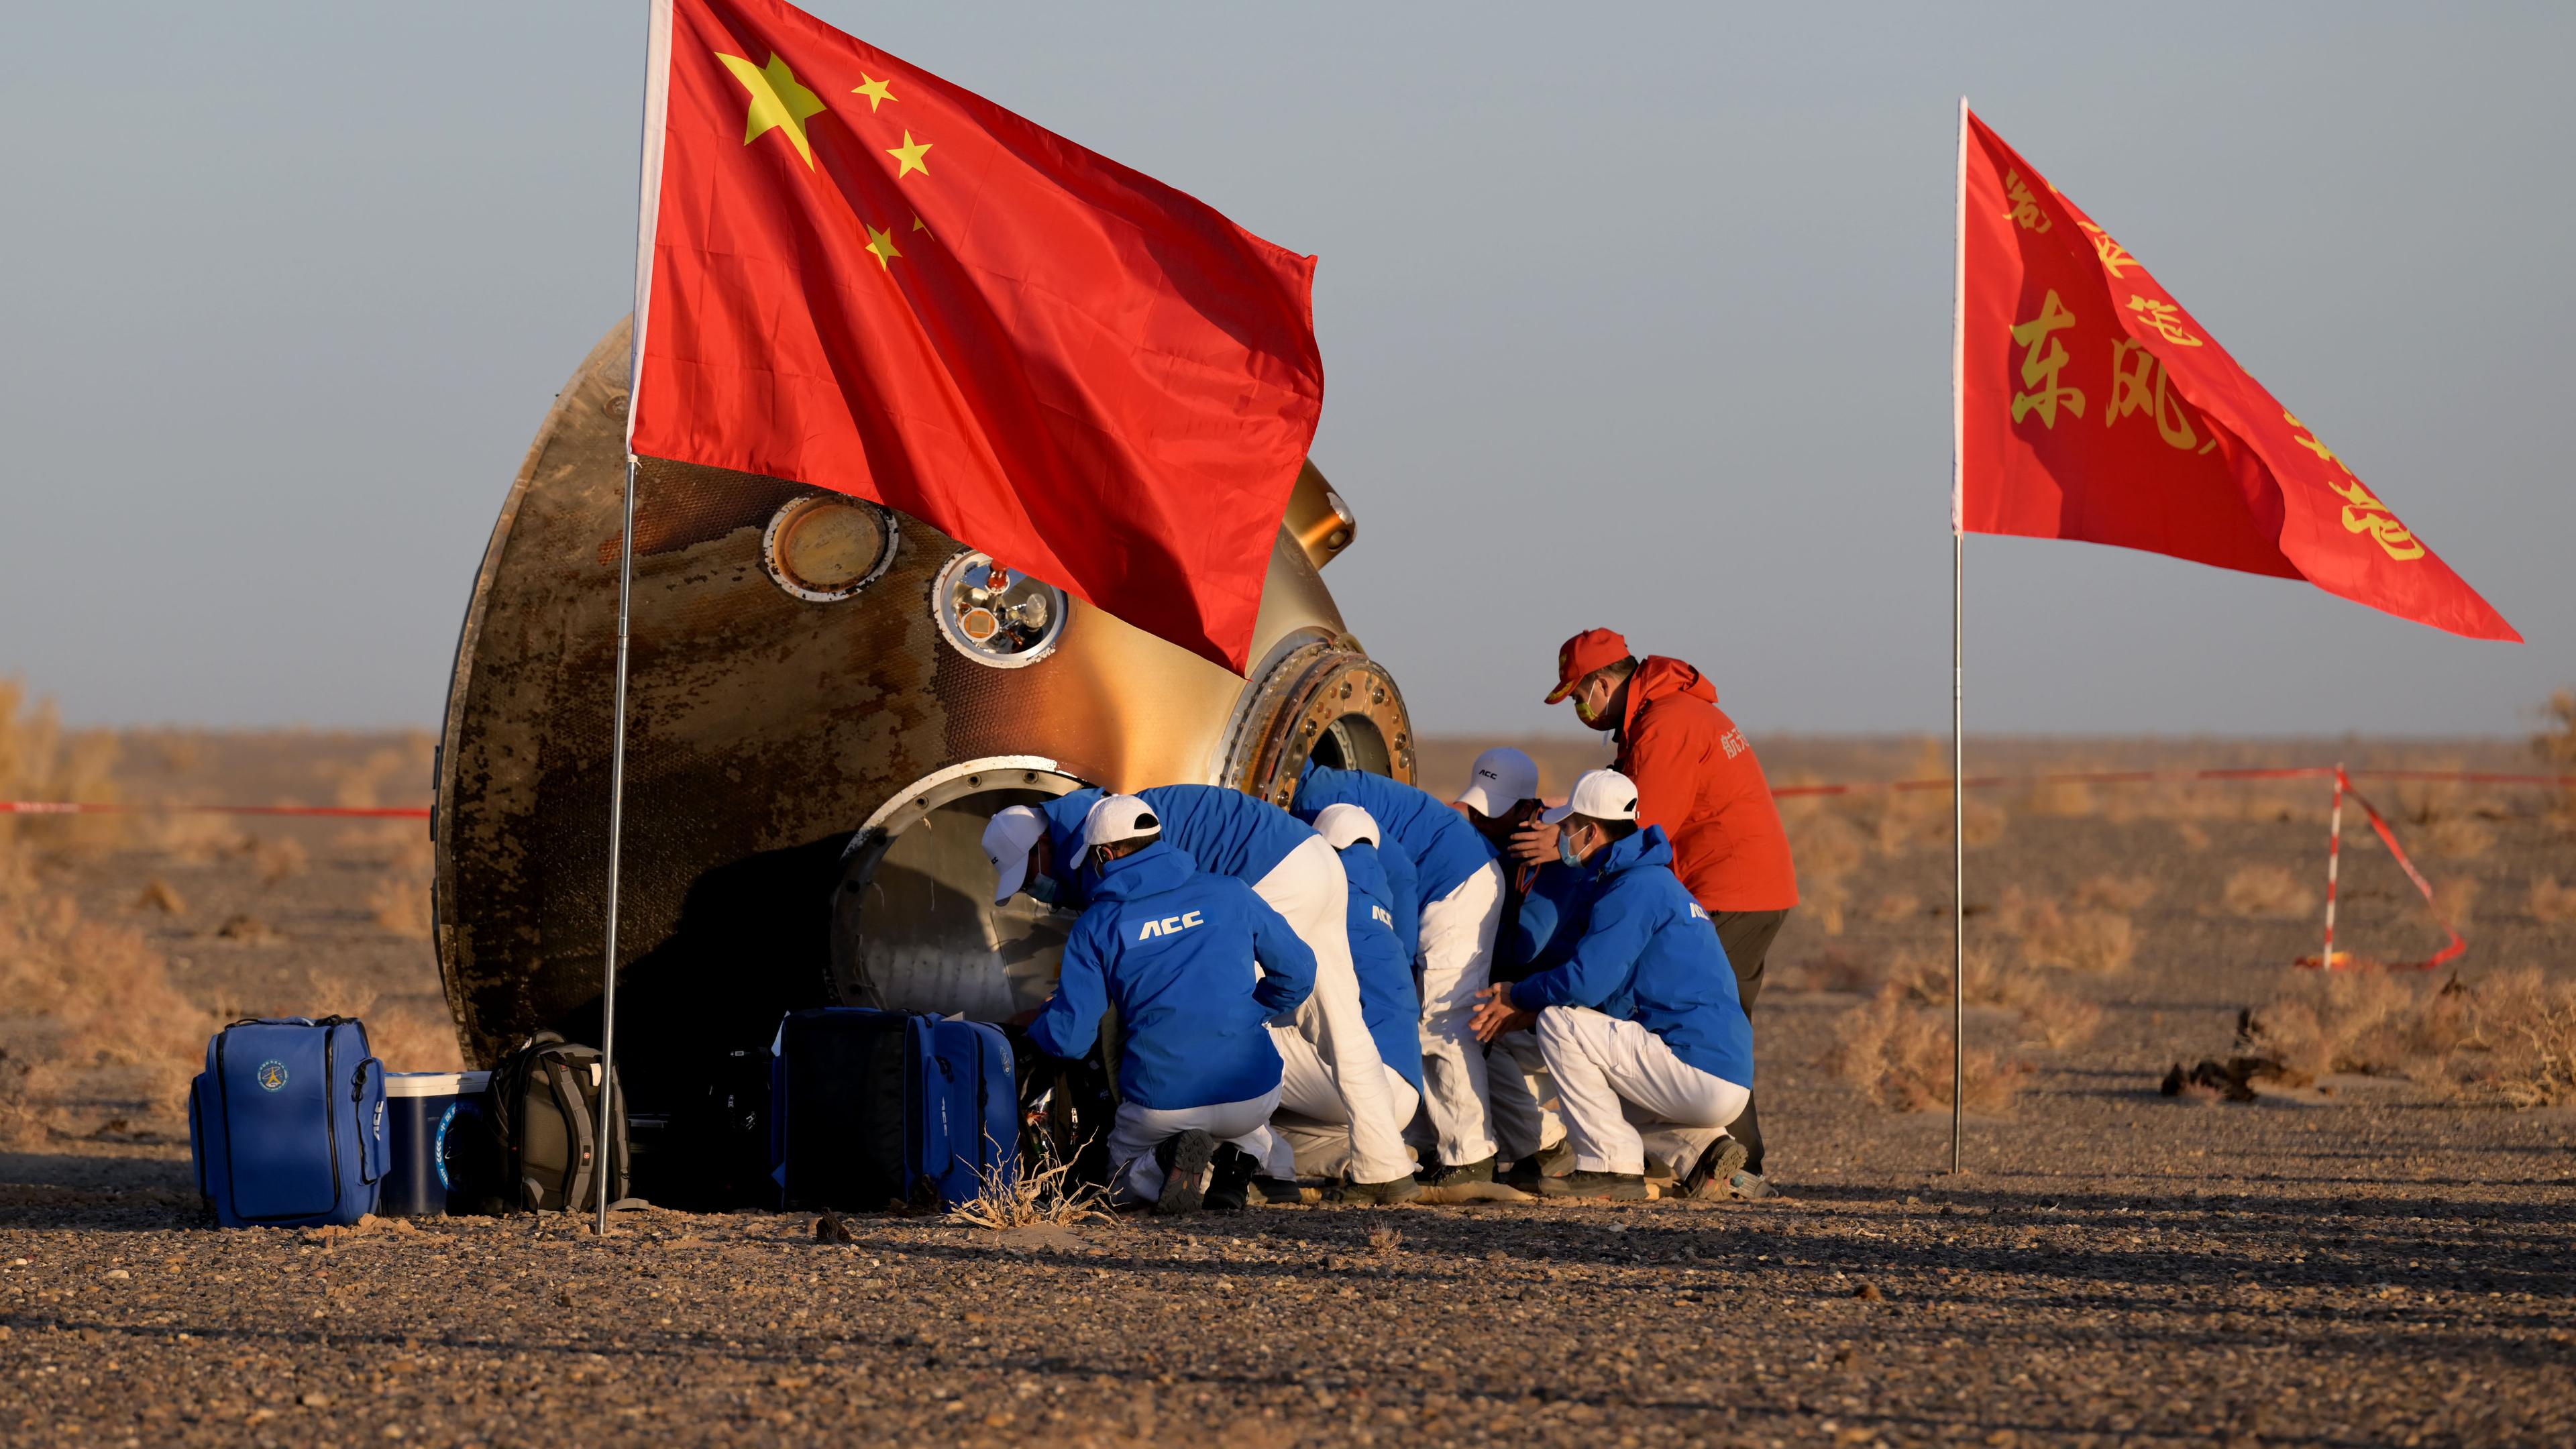 Die Rückkehrkapsel des Raumschiffs "Shenzhou 16" liegt in der Wüste Gobi, die Ausstiegsluke ist gerade geöffnet.